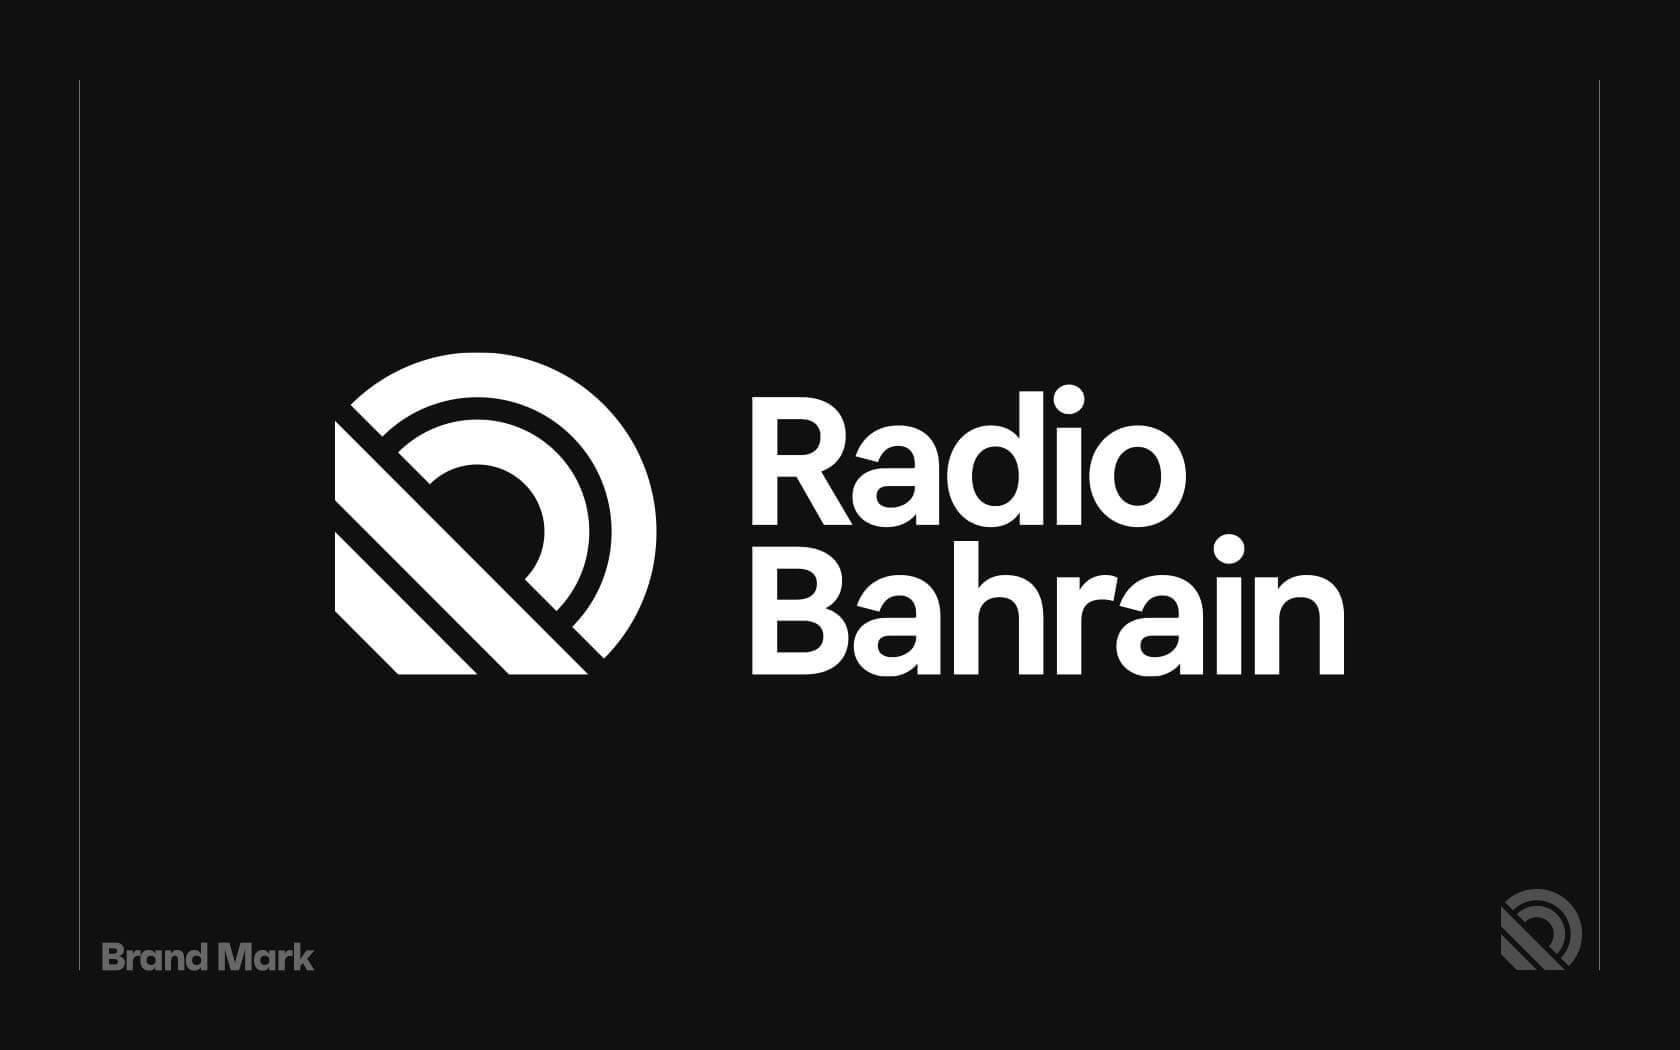 Radio Bahrain logo in white on black